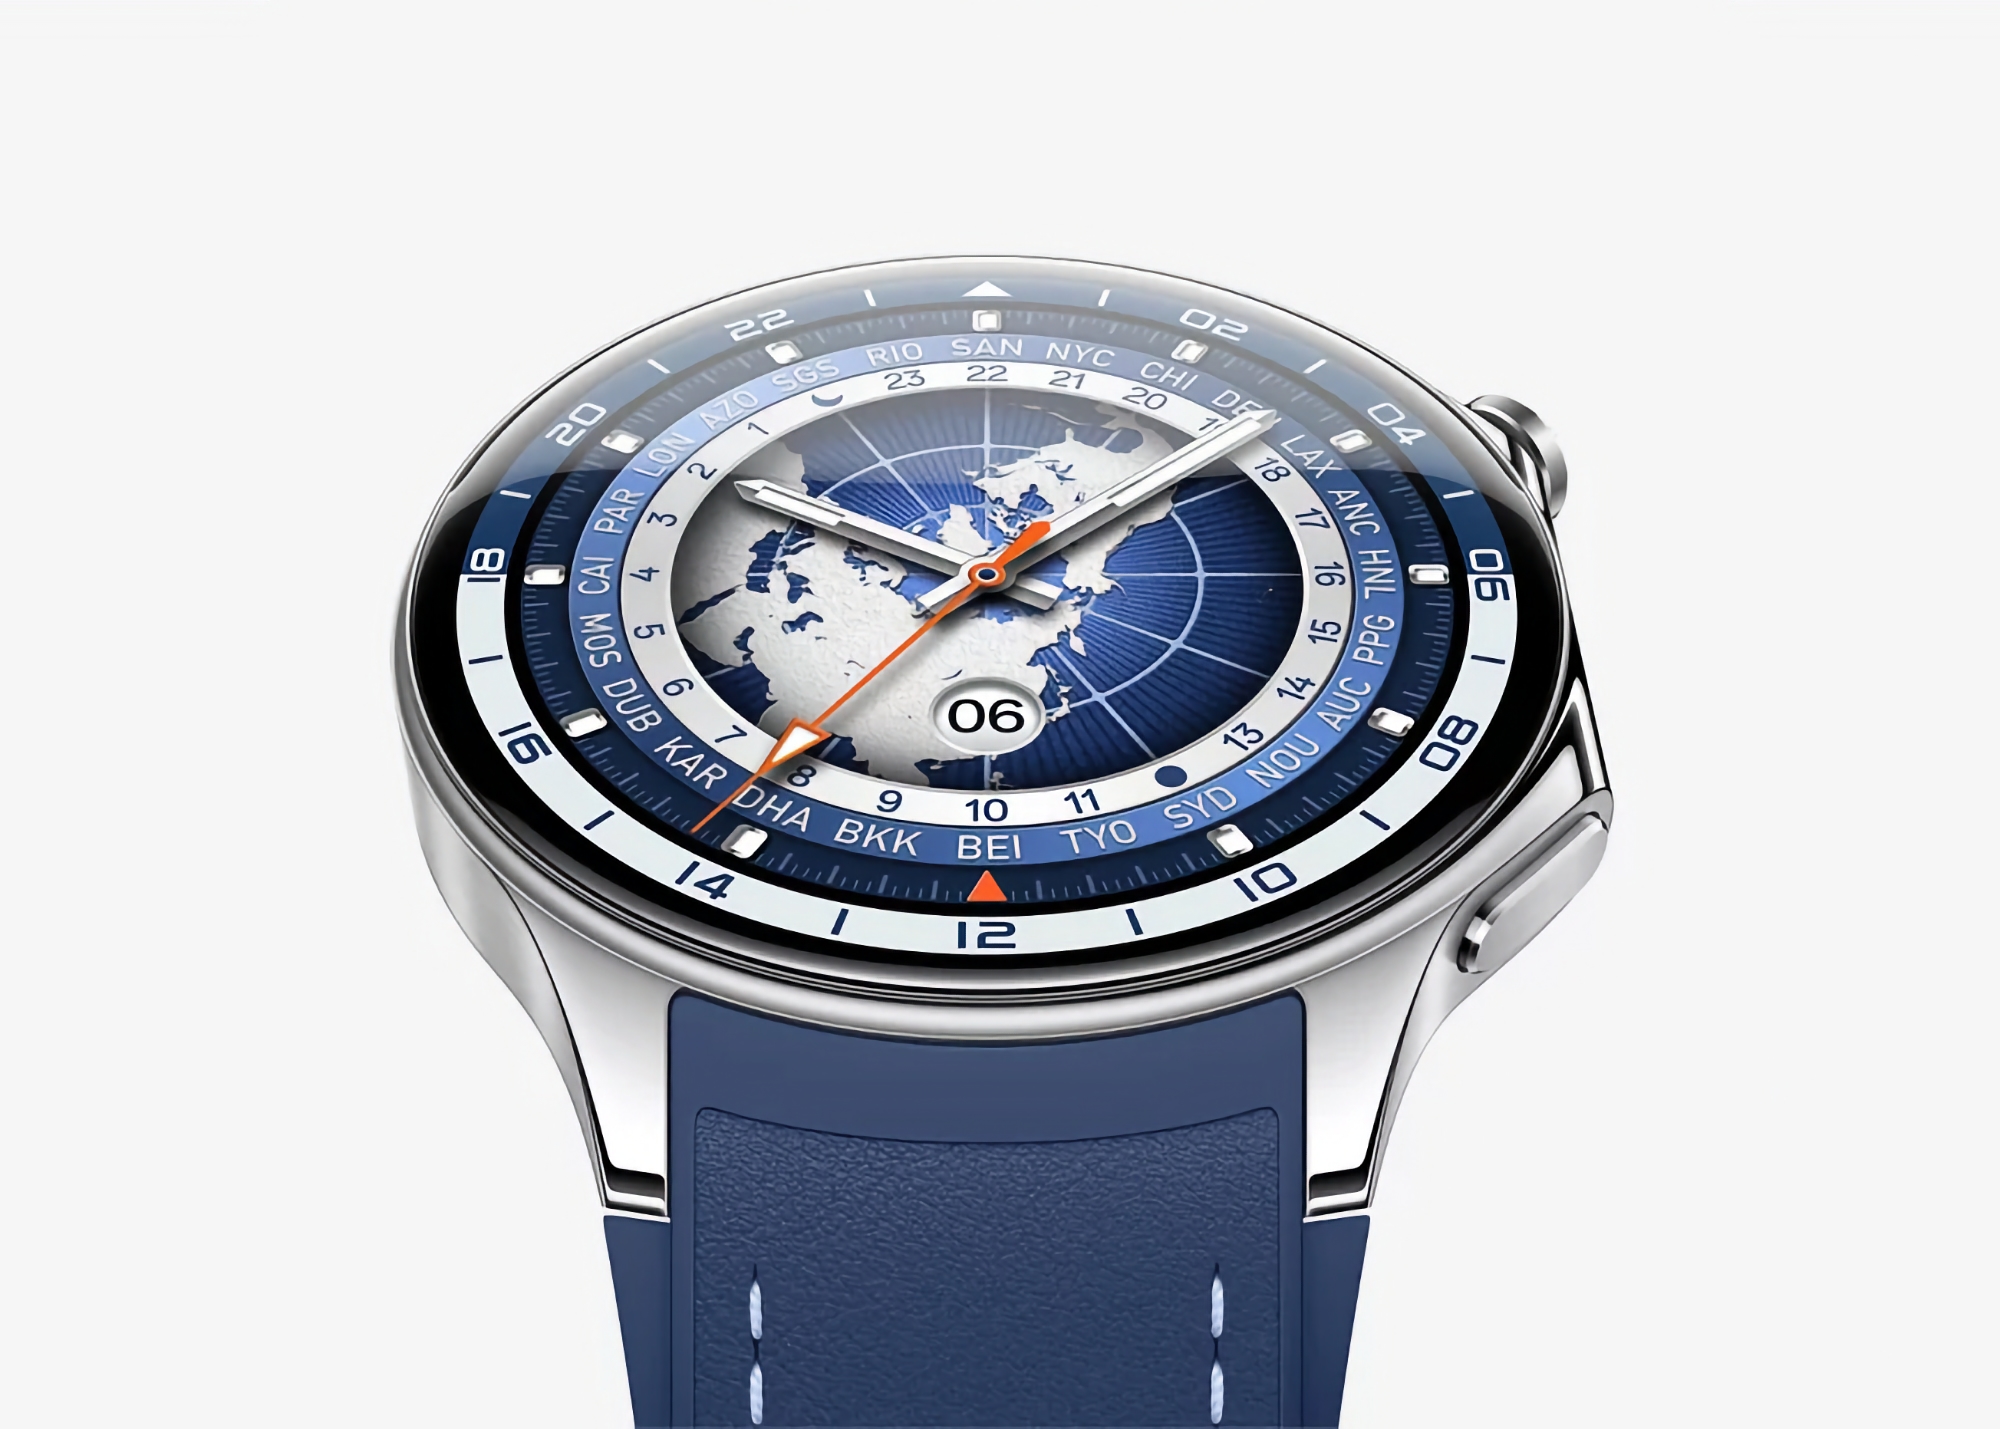 OPPO Watch X з підтримкою eSIM і ColorOS Watch на борту дебютують у Китаї 22 березня